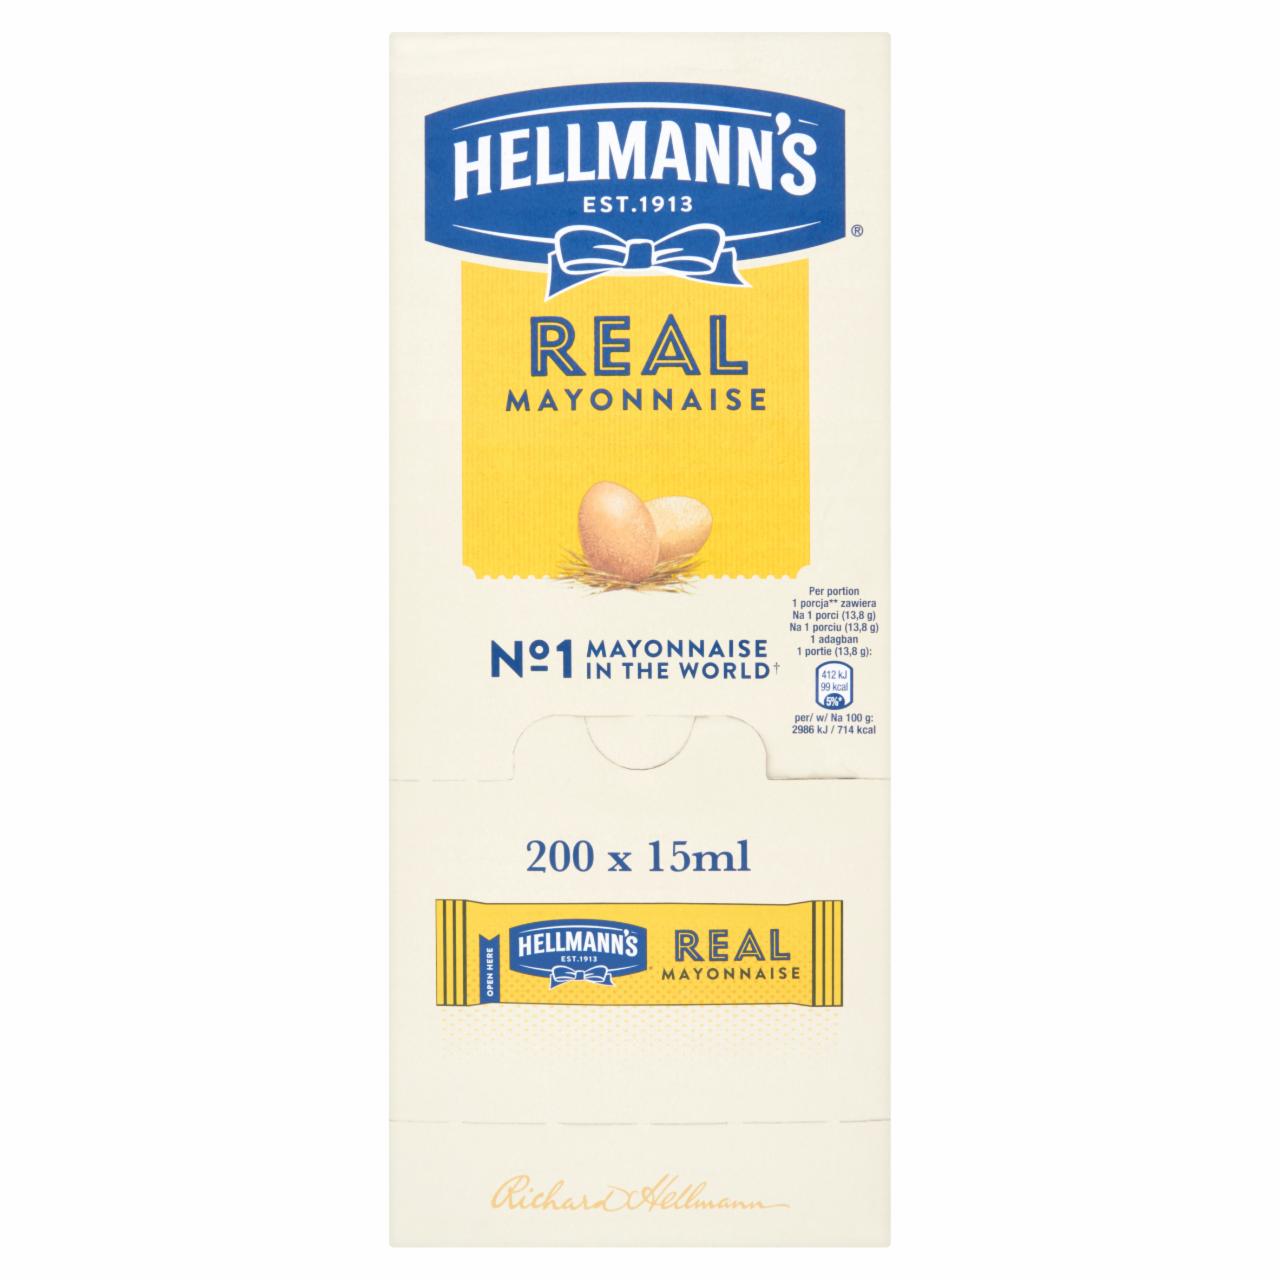 Képek - Hellmann's Mini majonéz 200 x 15 ml